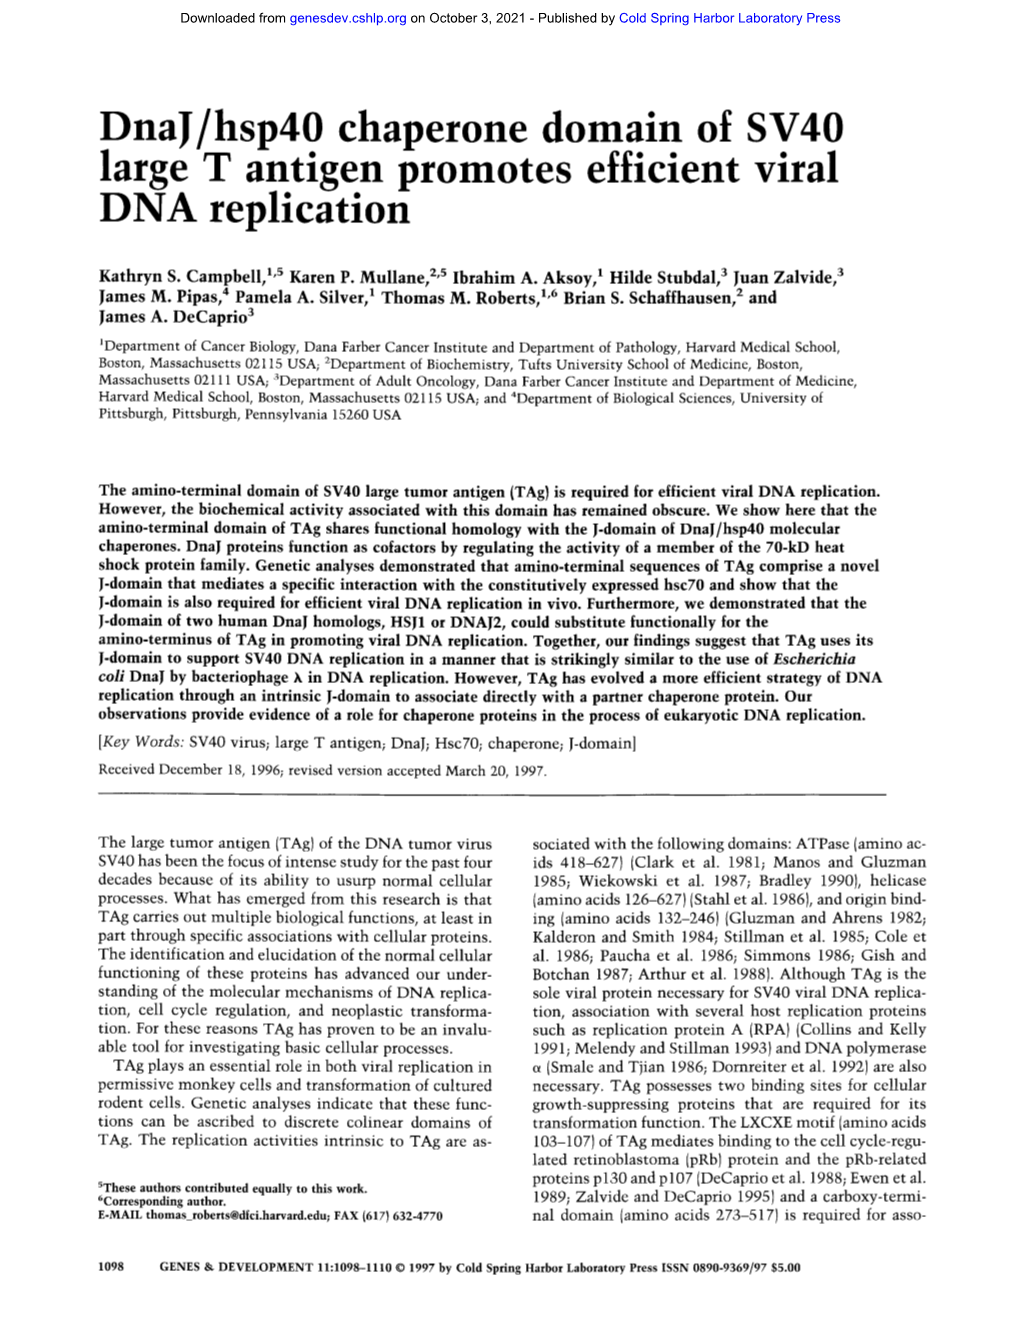 Dnaj/Hsp40 Chaperone Domain of SV40 Large T Antigen Promotes Efhclent Viral DNA Replication